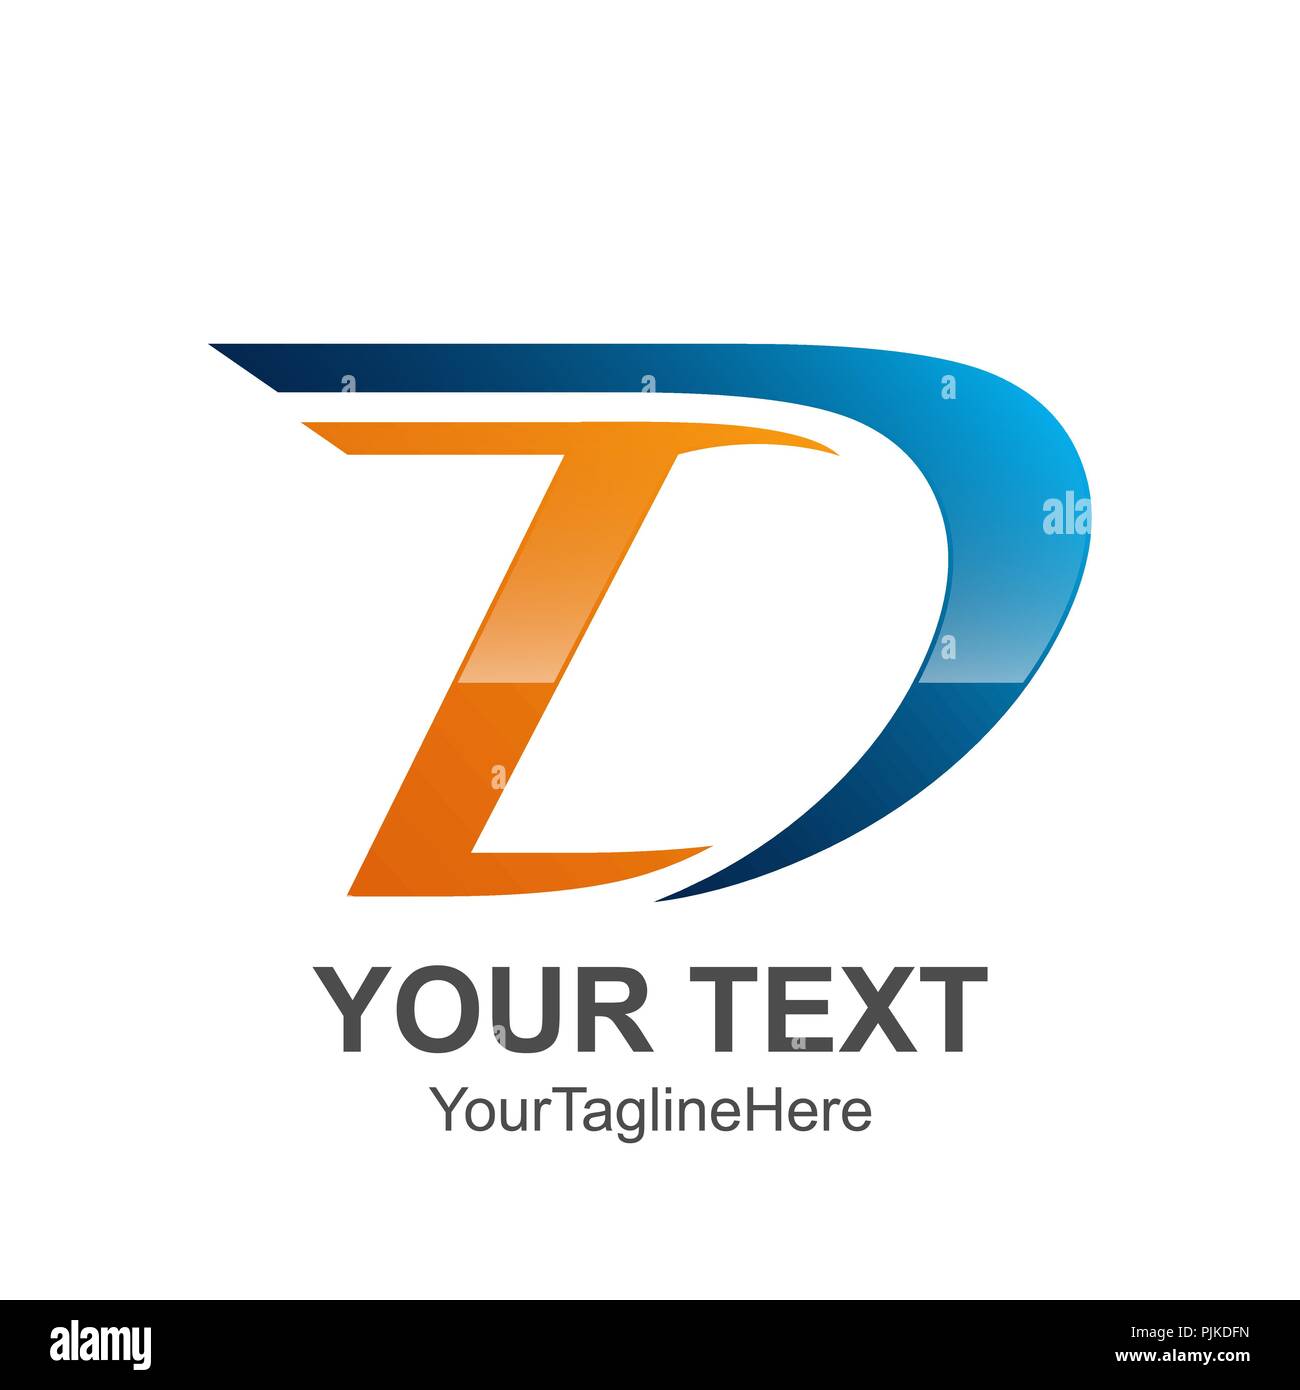 Initial D logo Vorlage blau orange Design für Business und Unternehmen Identität Stock Vektor